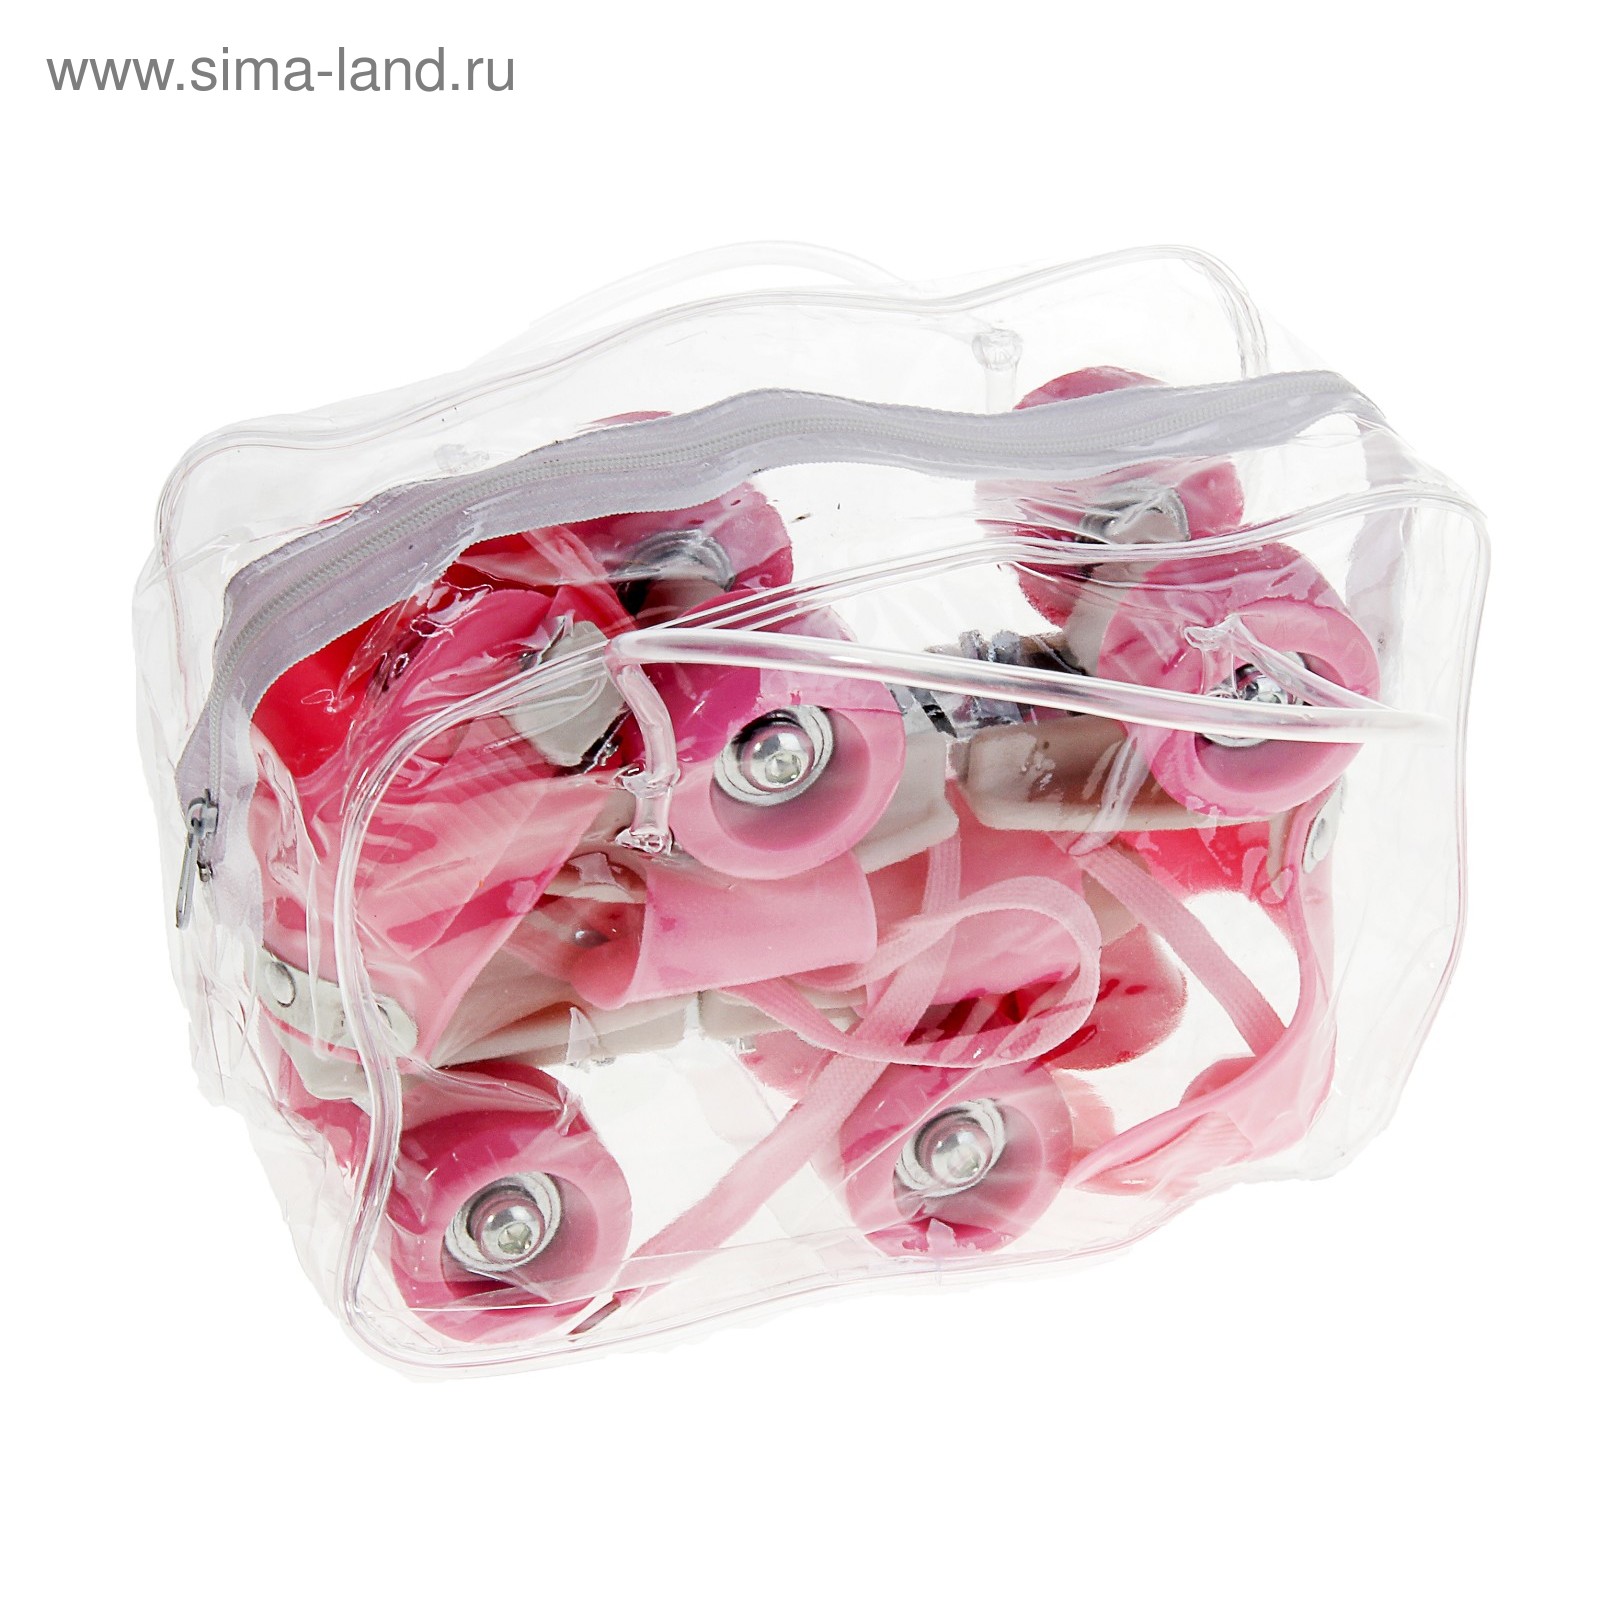 Ролики для обуви раздвижные, размер 16-21 см, колеса РVC d = 45 мм, цвет розовый